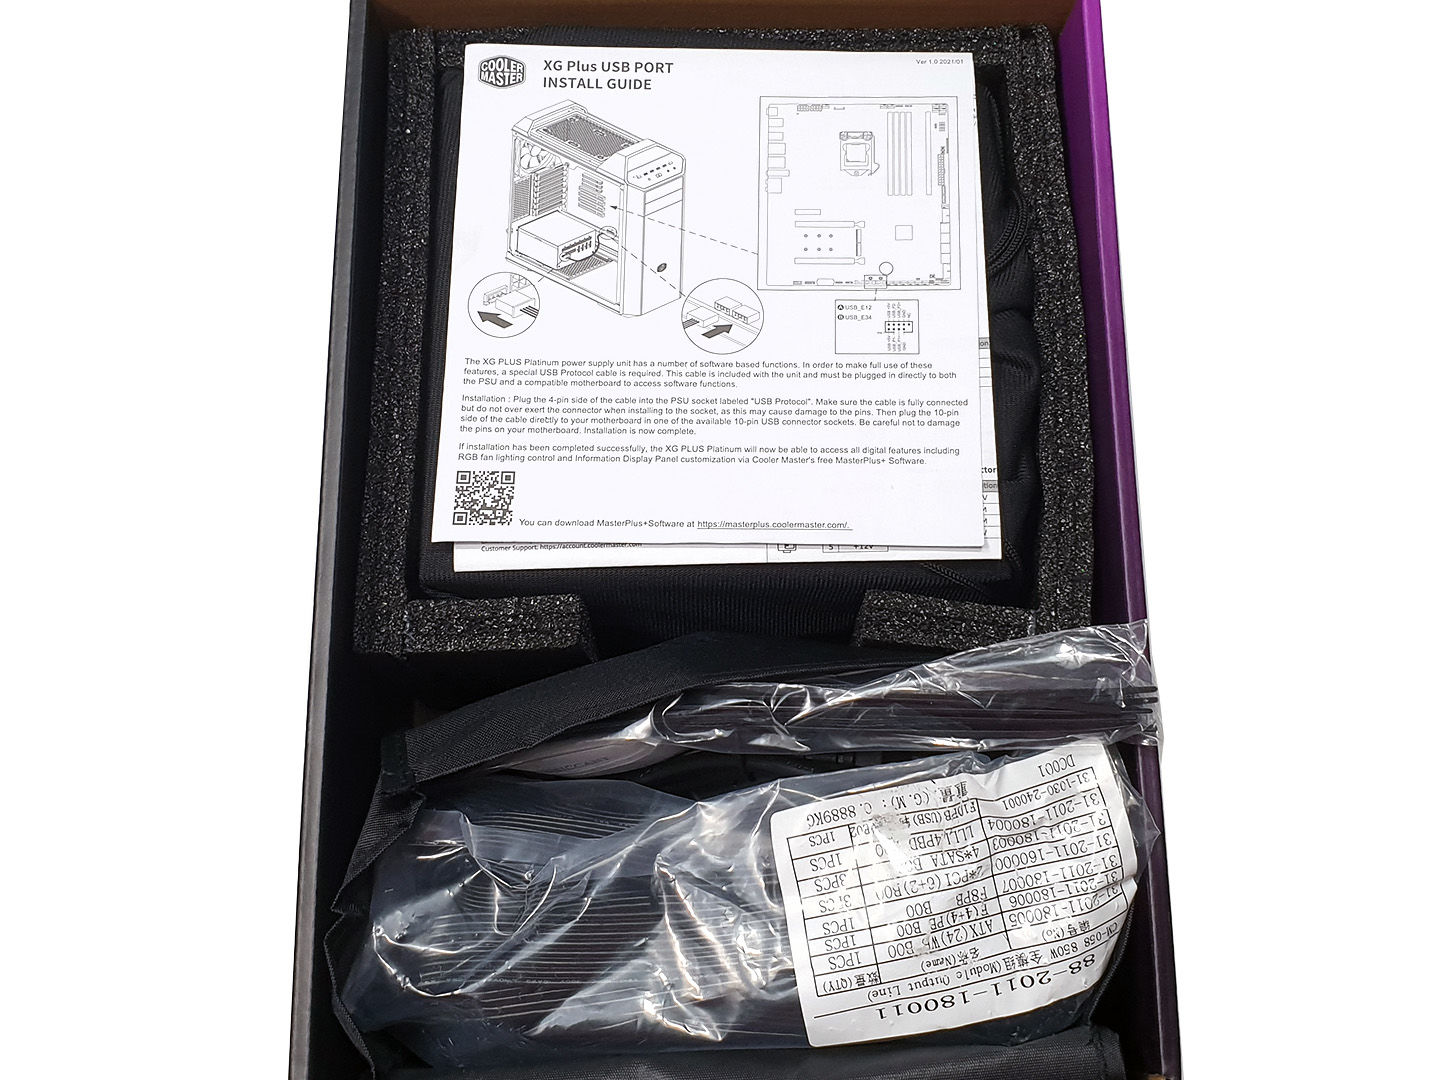 Обзор Cooler Master XG850 80 Plus Platinum